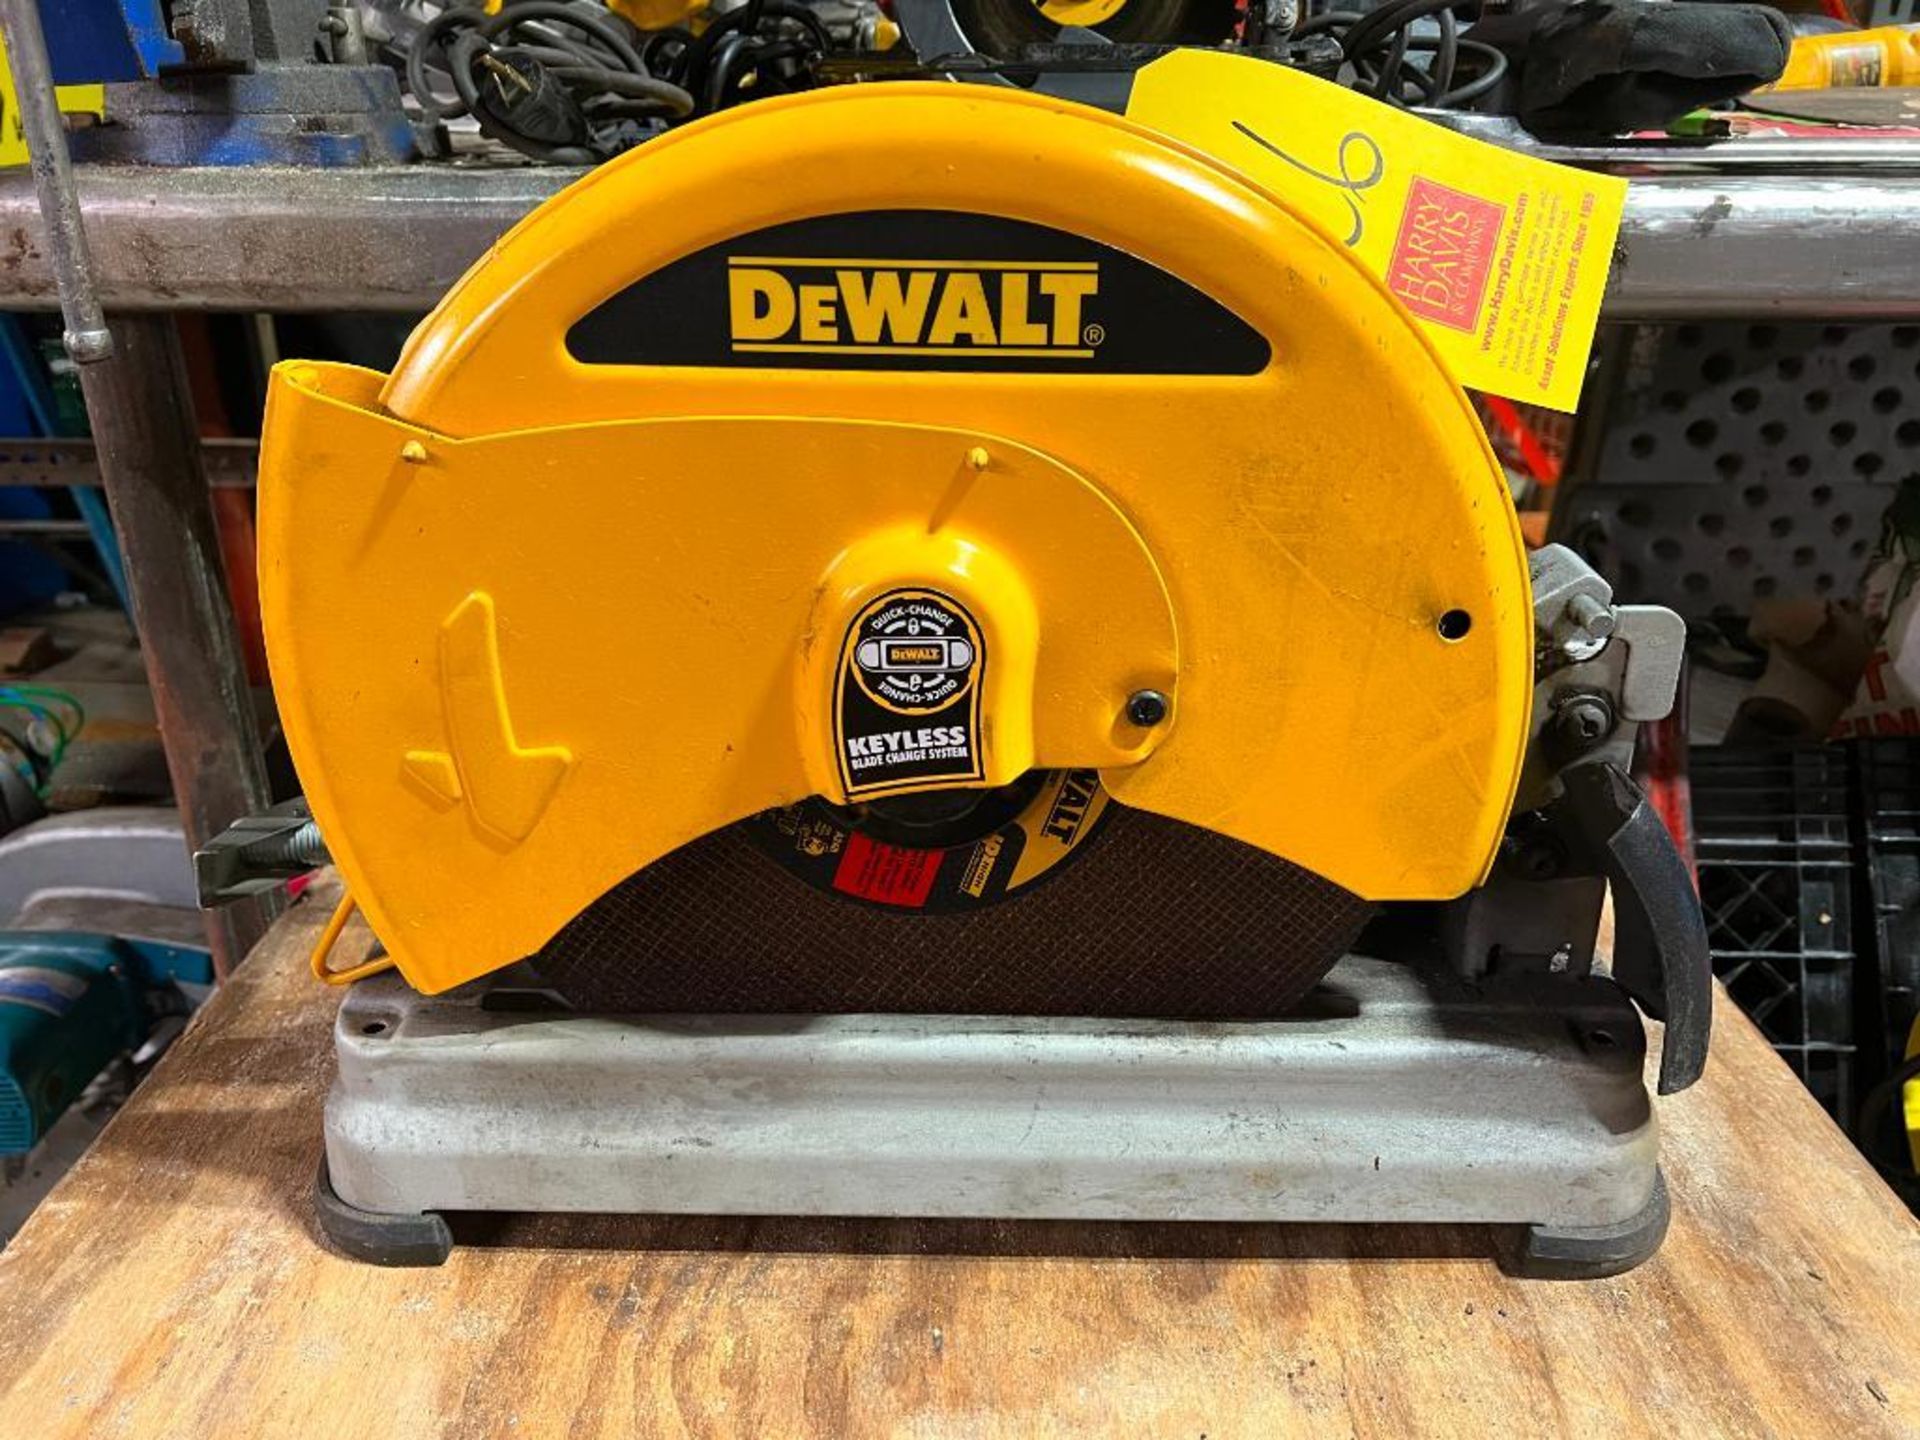 DeWalt 14" Chop Saw, Model: D28715 - Rigging Fee: $25